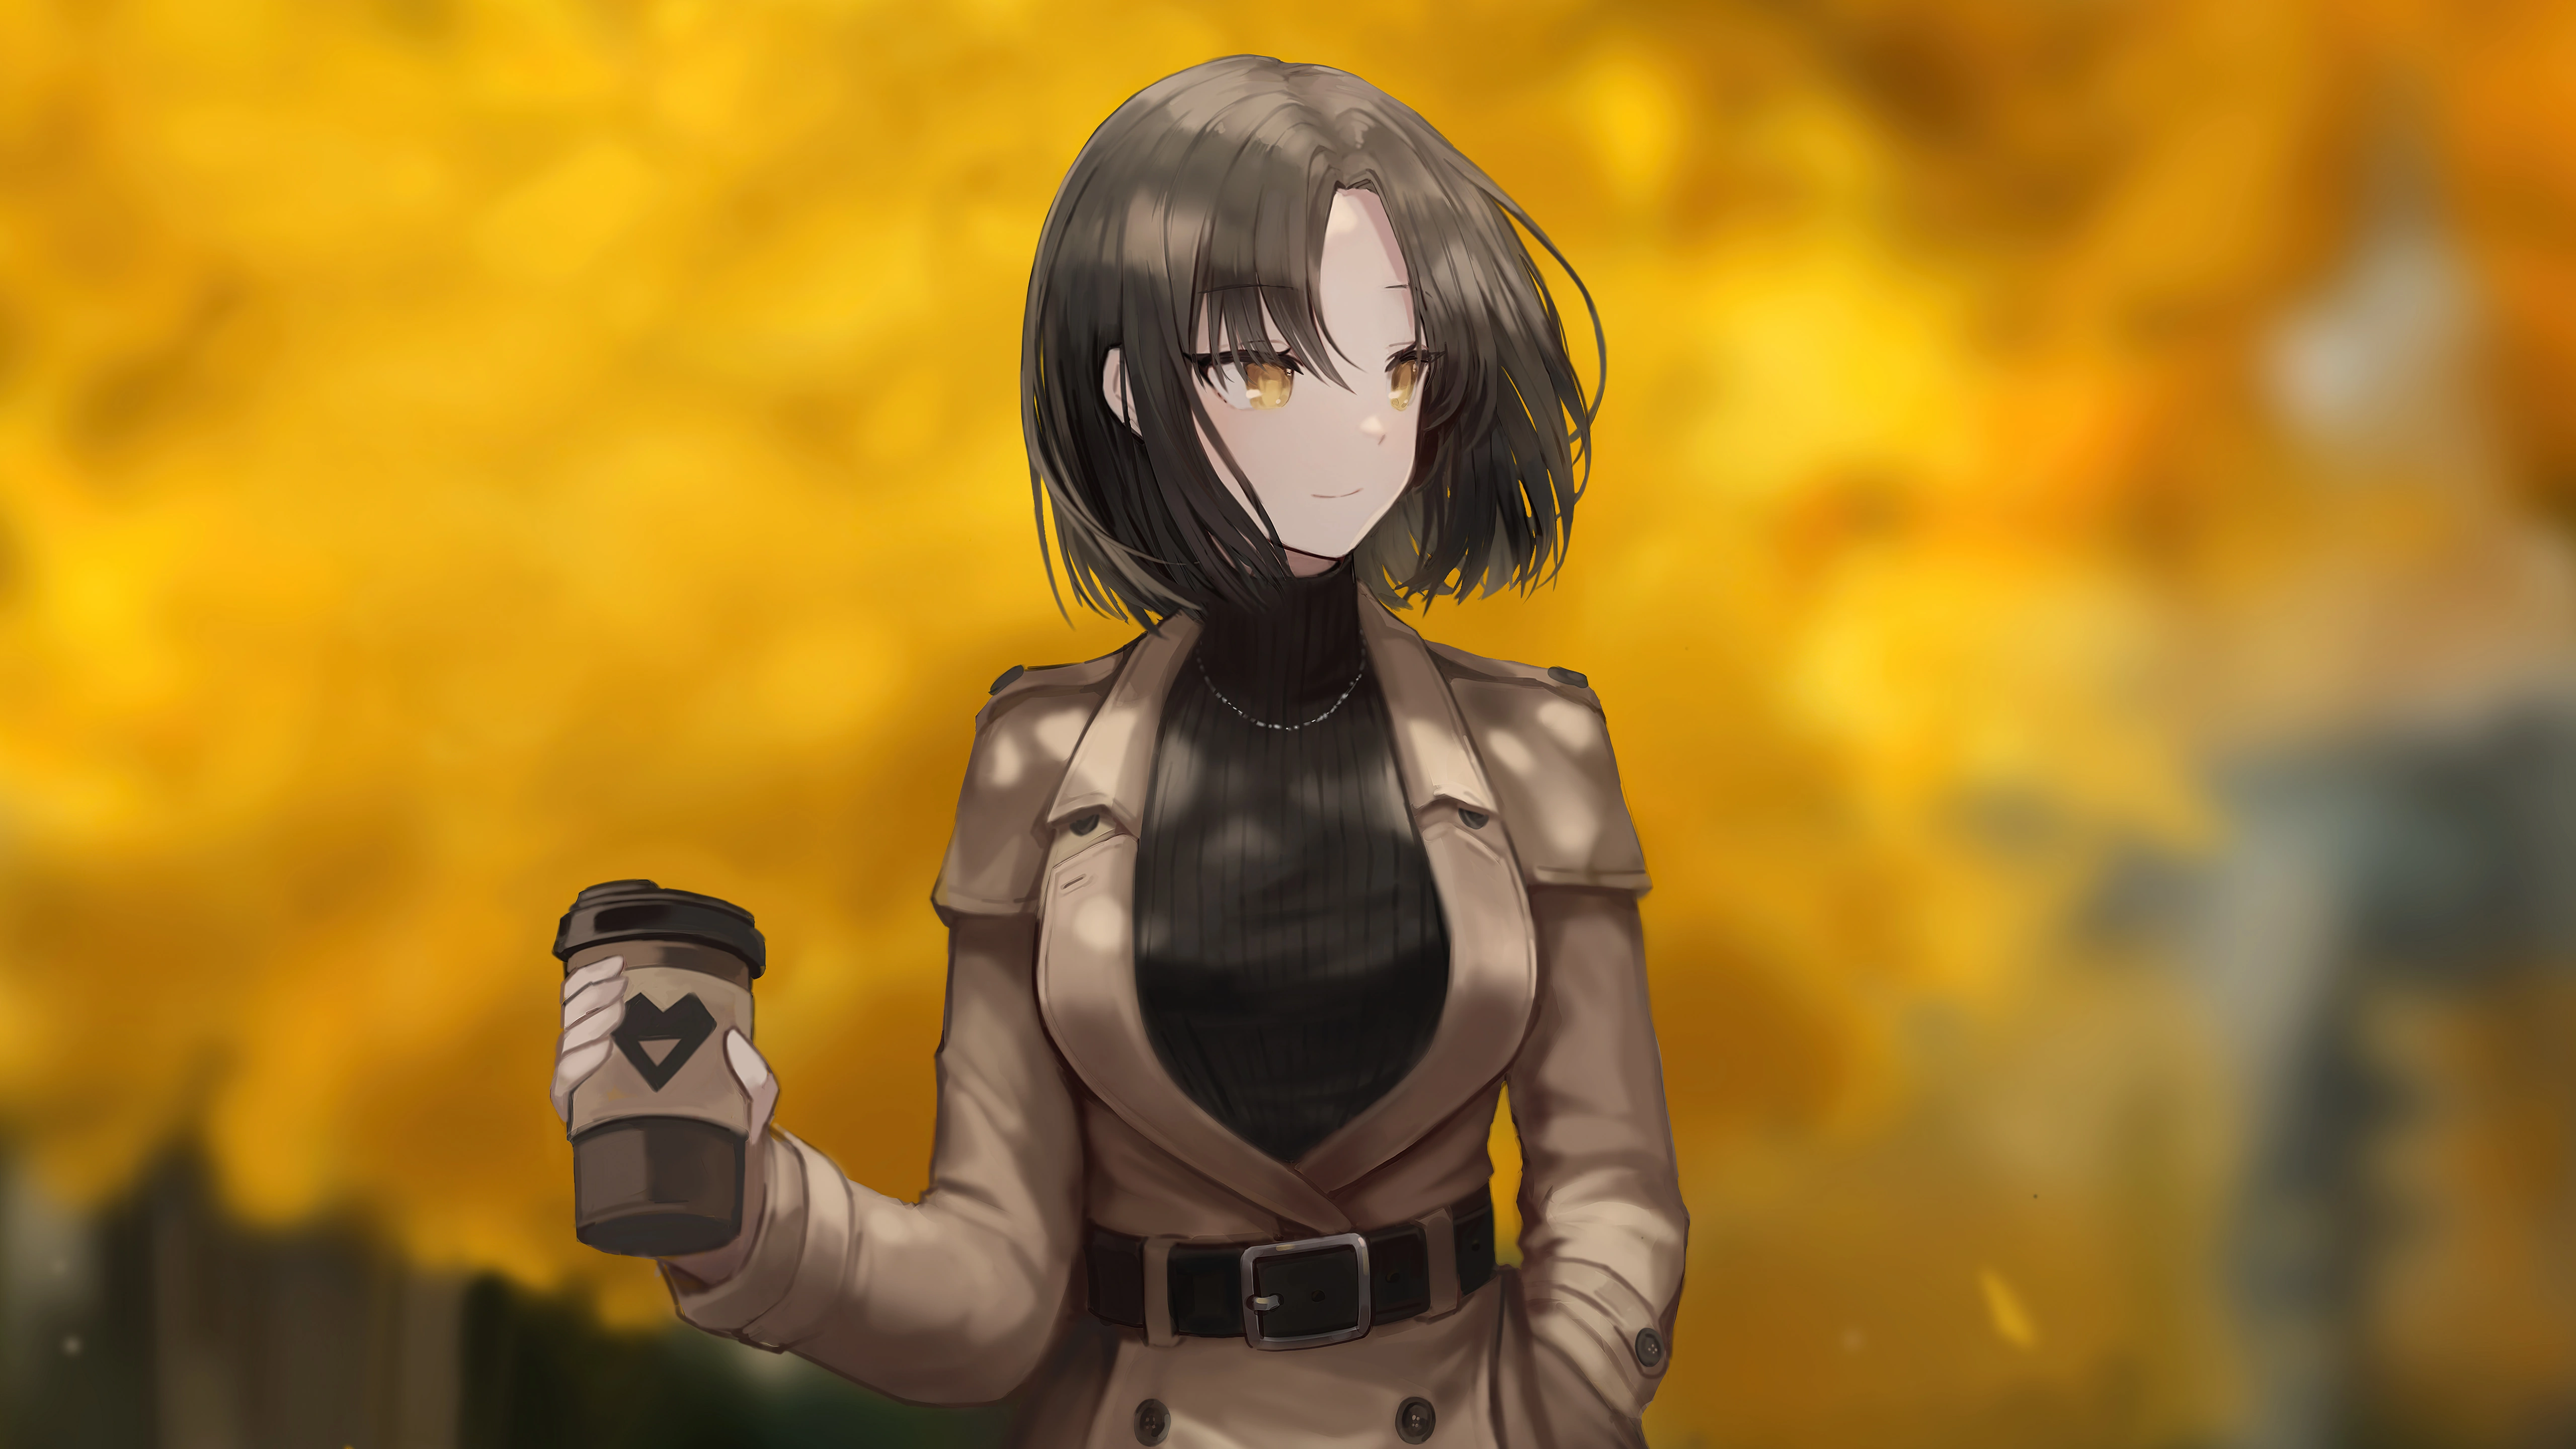 anime girl with coffee mug 4k 1696363594